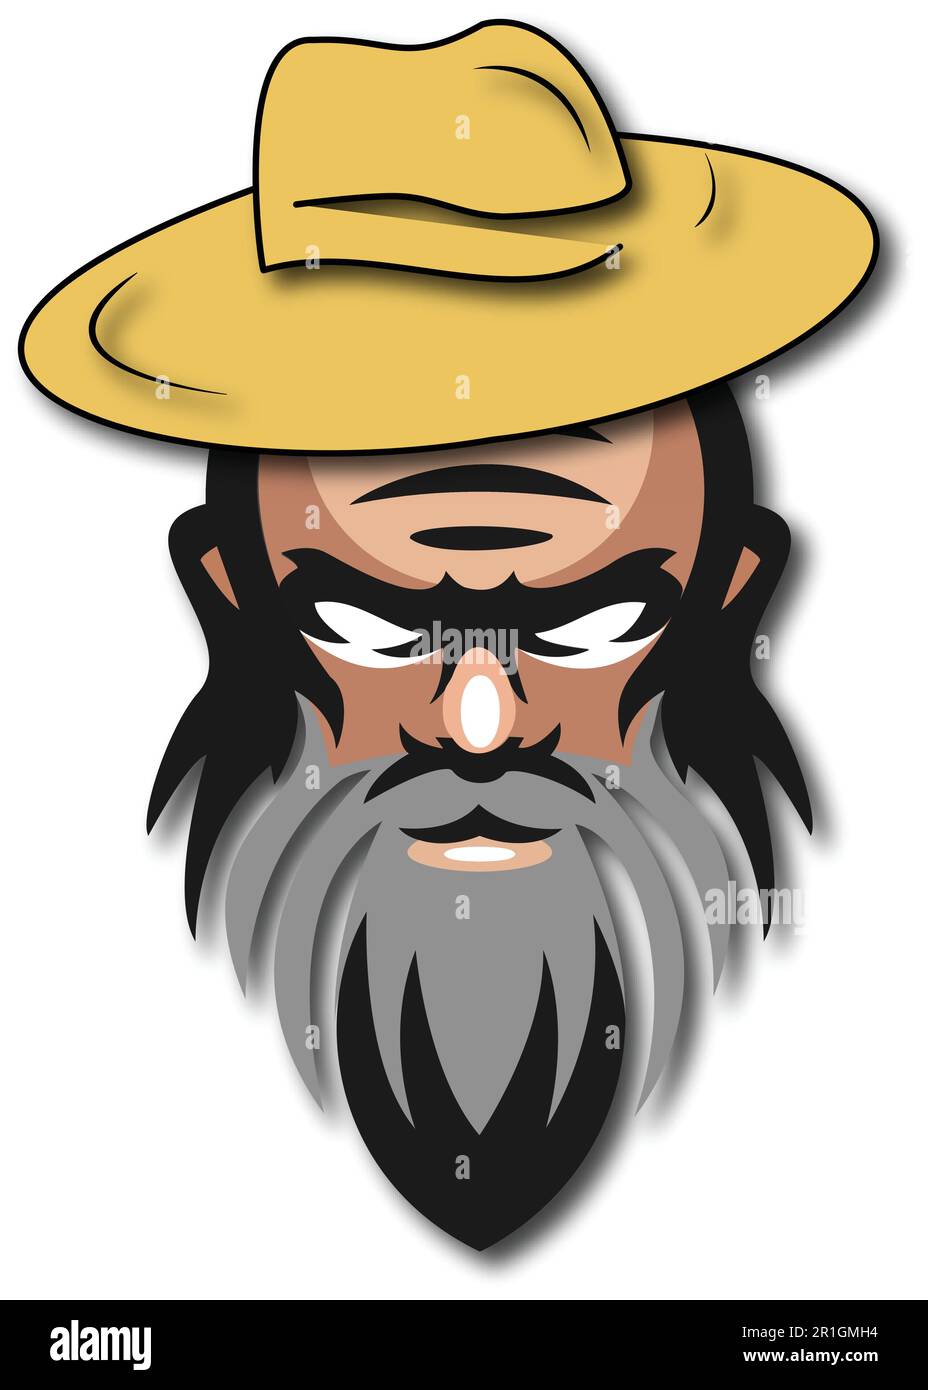 Il logo Gaming Old Man Beard è un design unico e accattivante che combina gli elementi del gioco e il fascino distinto di un vecchio Illustrazione Vettoriale